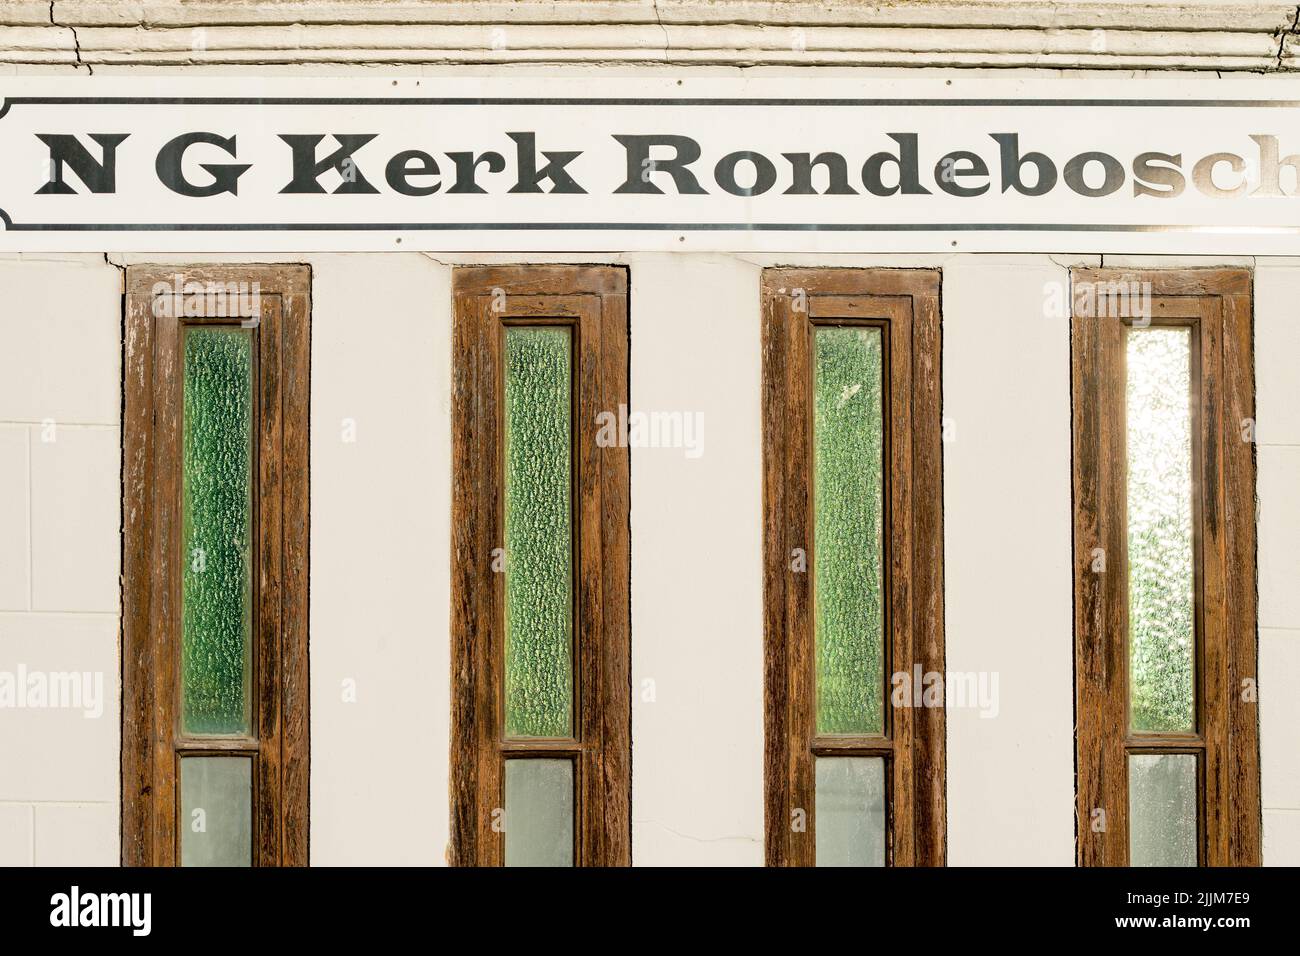 N G Kerk Rondebosch signo o señalización sobre las ventanas de la iglesia primer plano en Ciudad del Cabo, Sudáfrica concepto de religión, creencias religiosas, espiritualidad Foto de stock